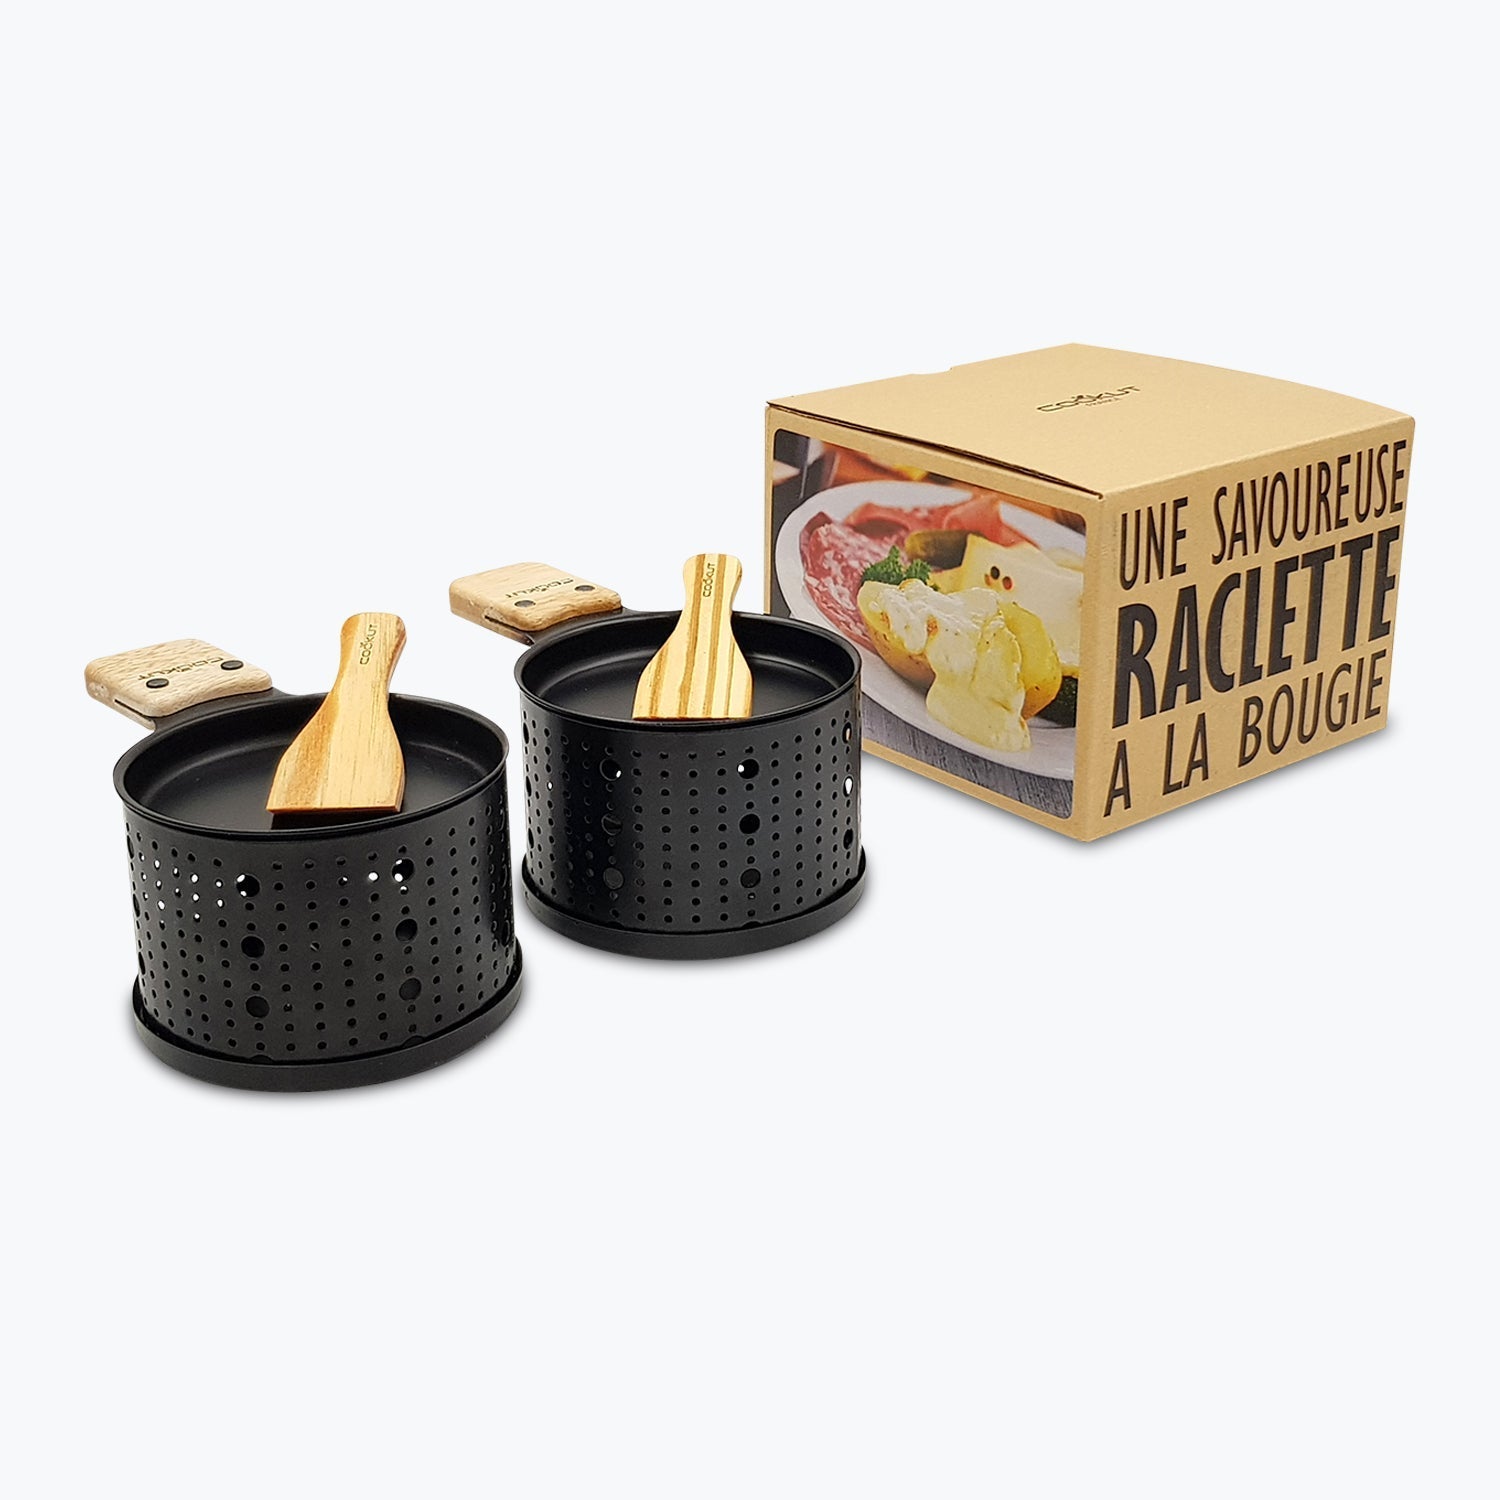 Raclette à la bougie duo / une savoureuse raclette à la bougie